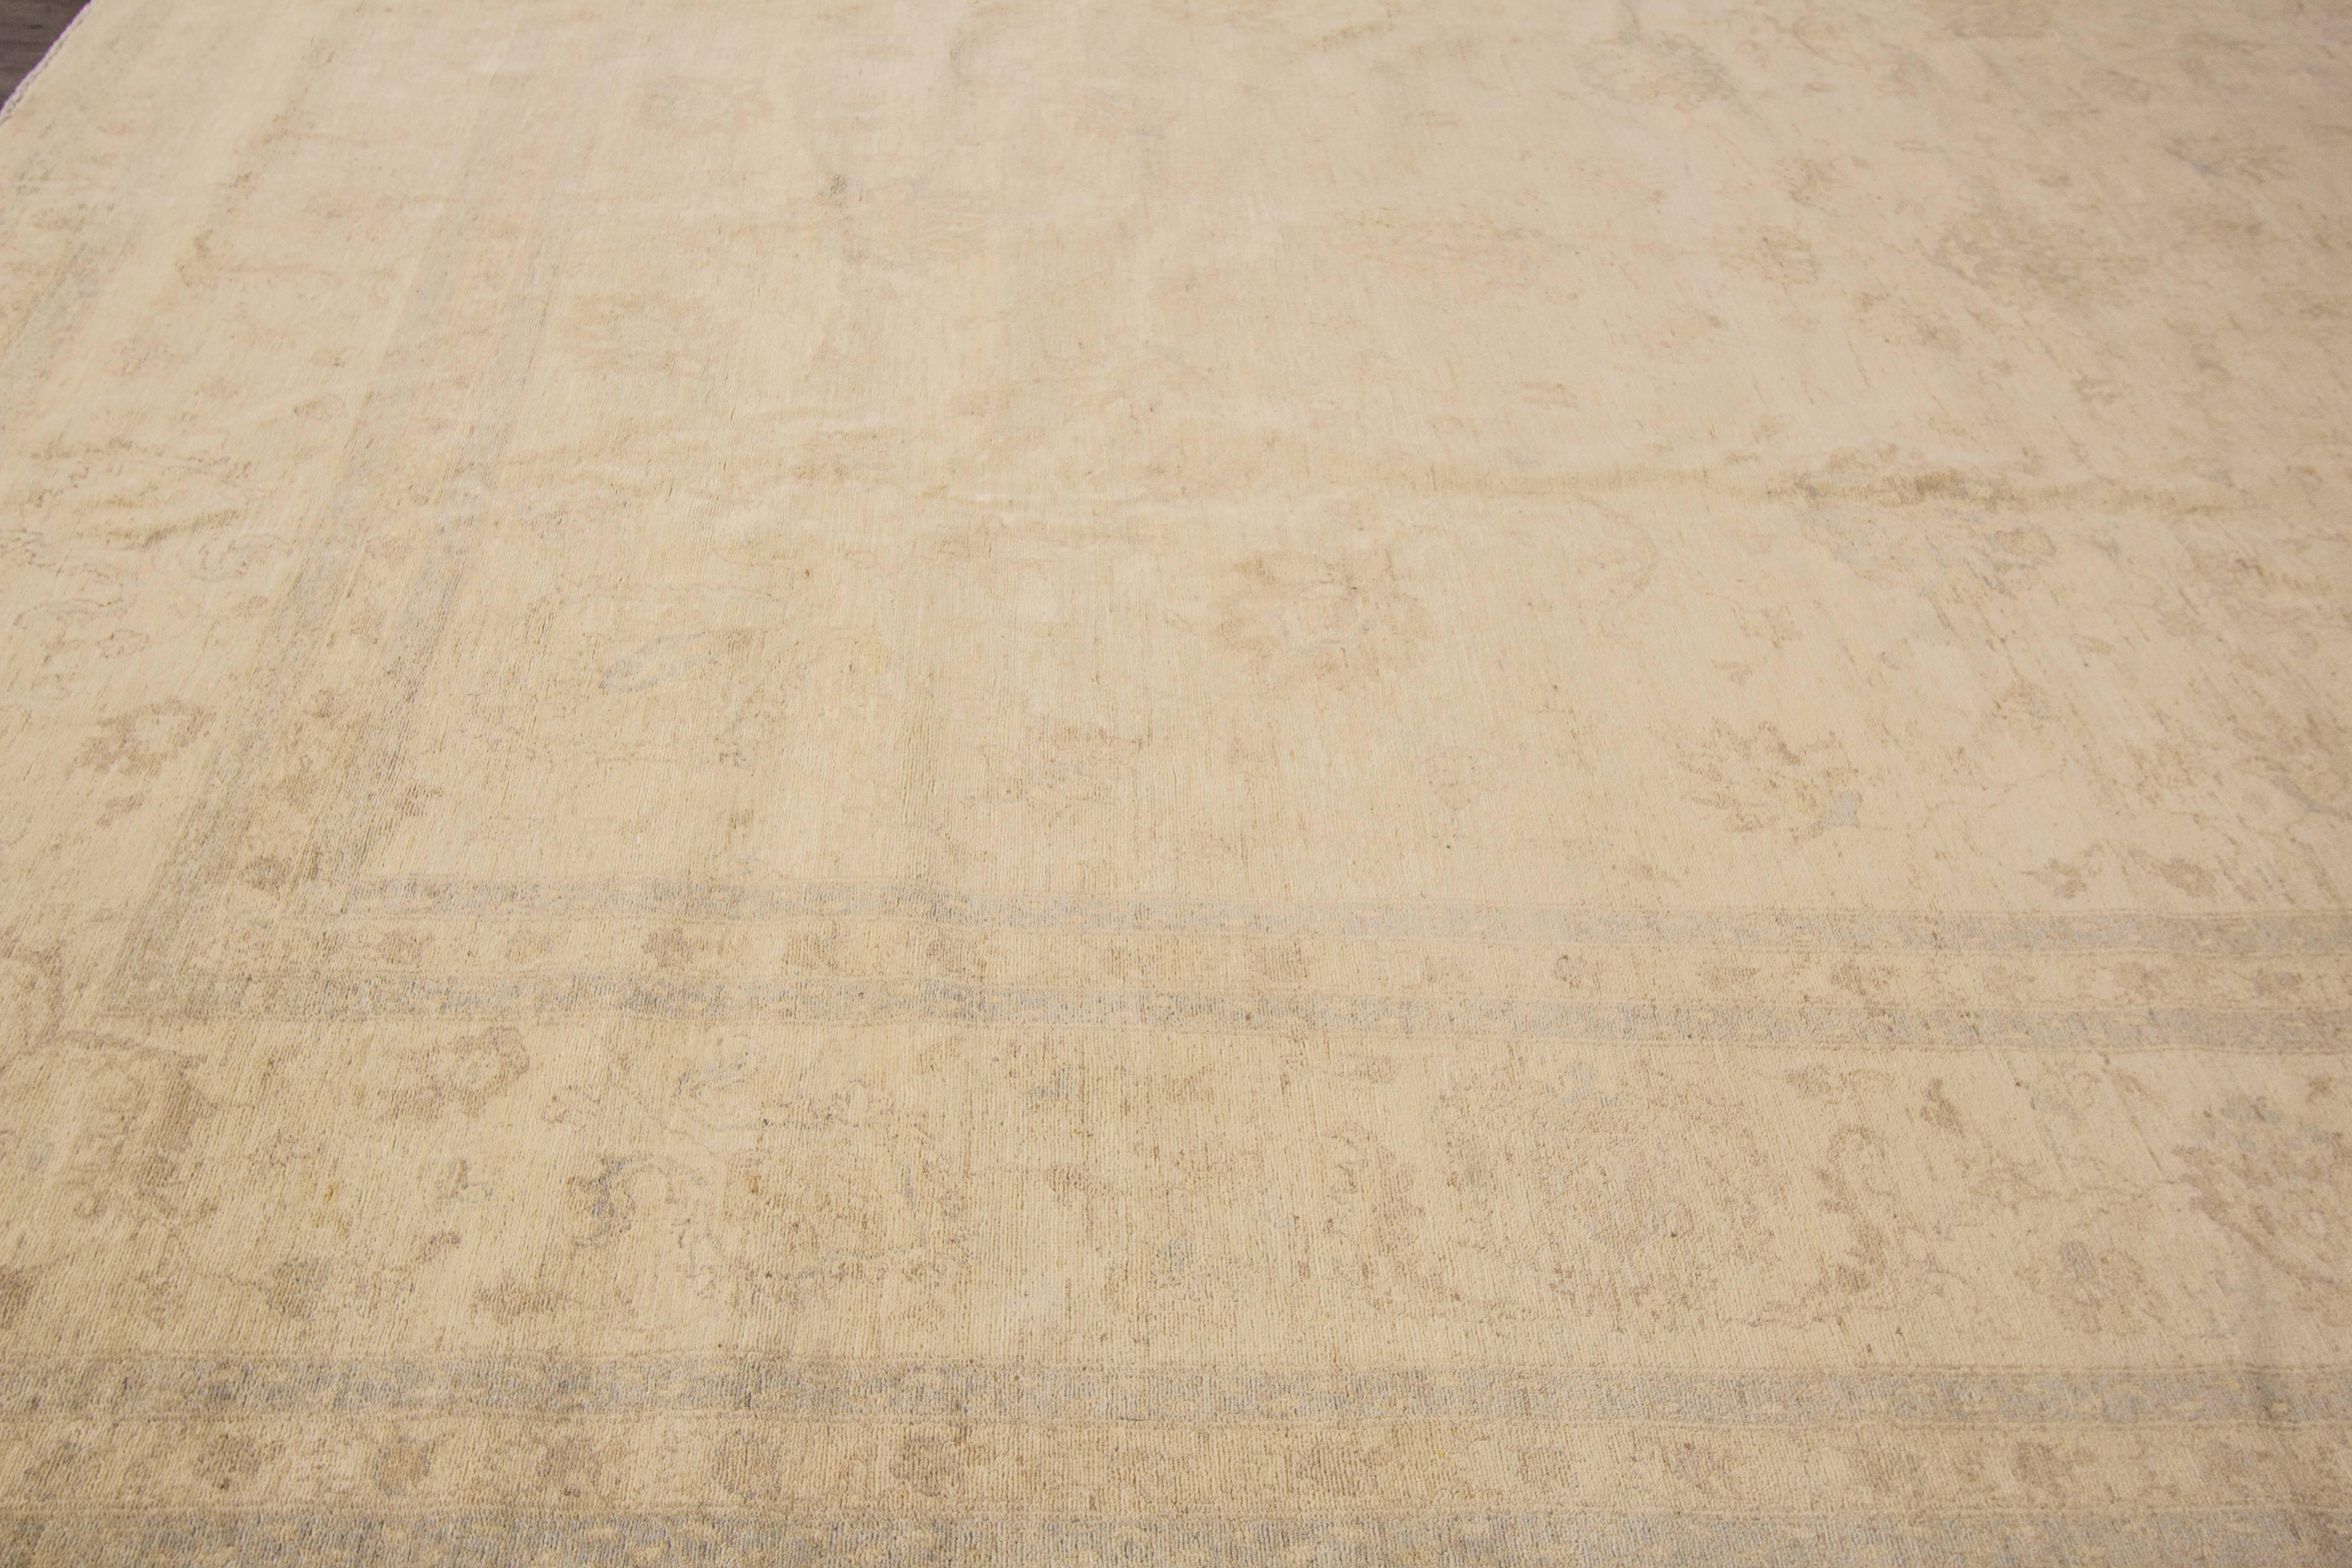 zeitgenössischer pakistanischer Peshawar-Teppich des 21. Jahrhunderts (2000) mit beigem Feld und dunklerem hellbraunem/sandfarbenem Allover-Muster. Maße 12x15.